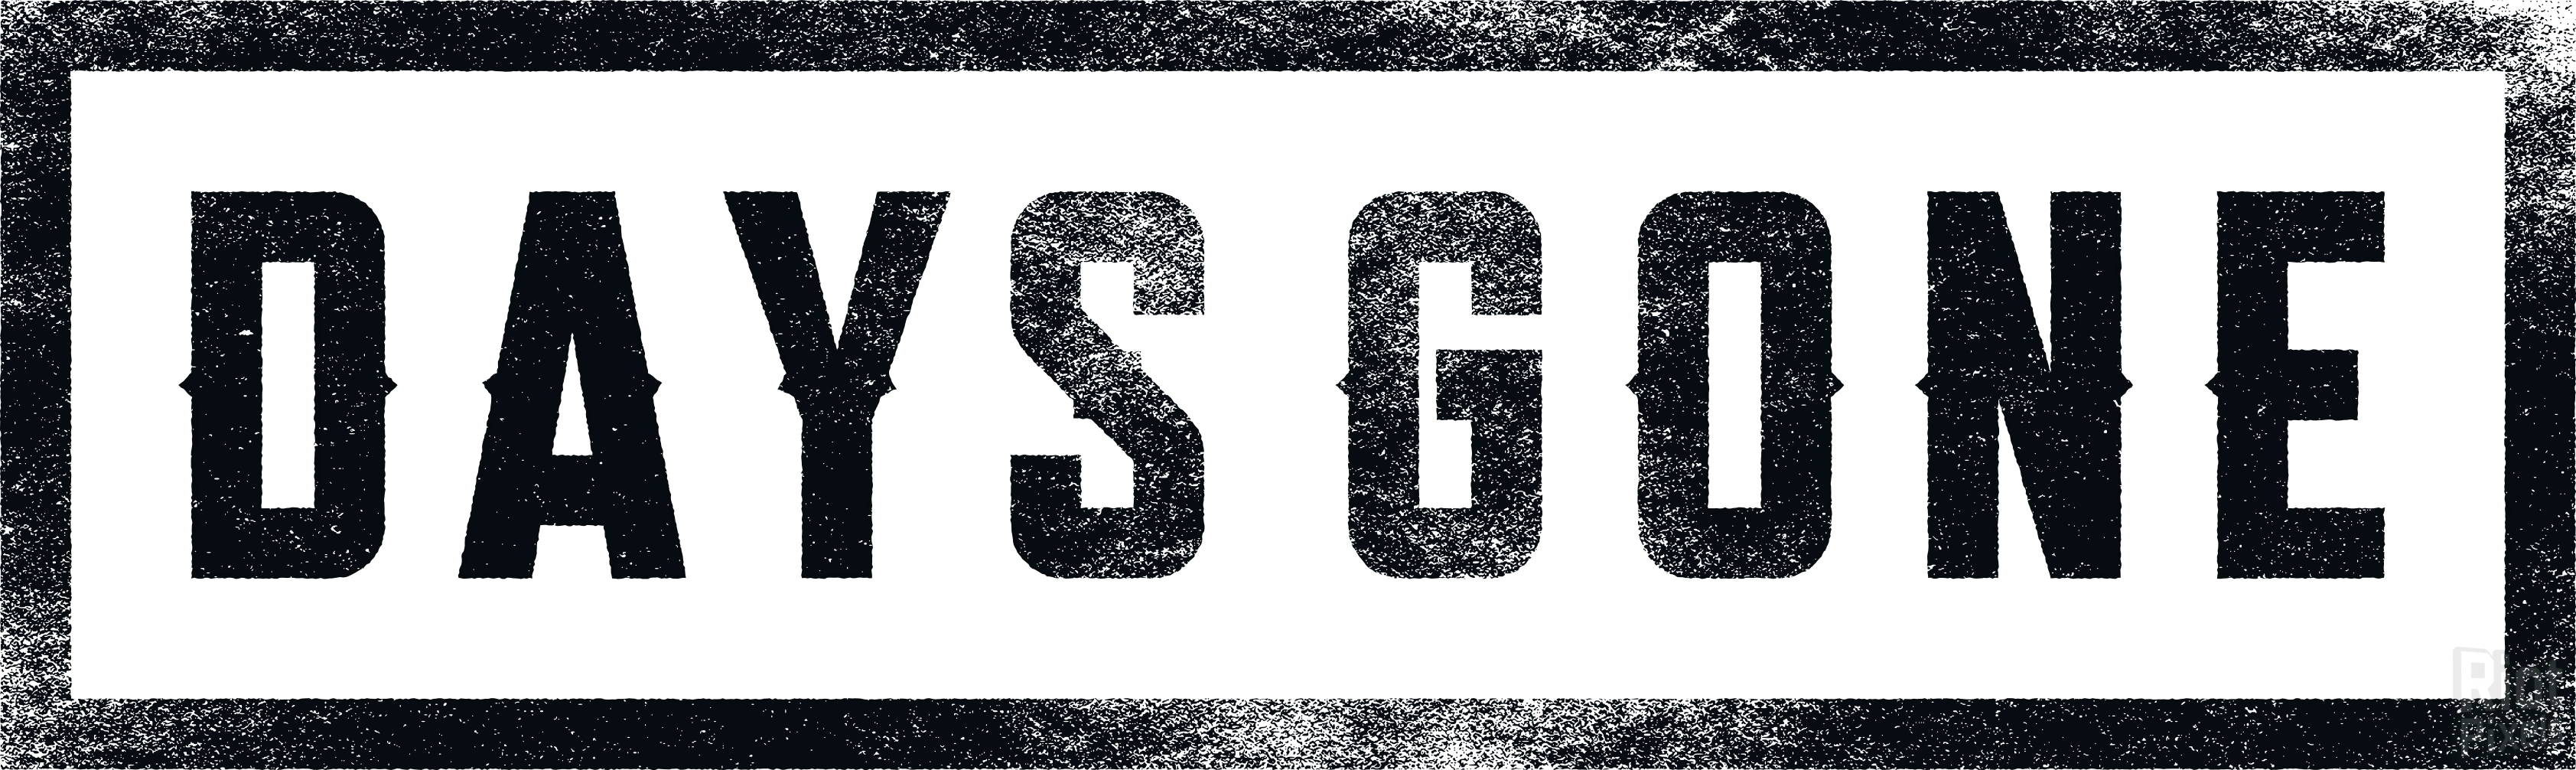 logo Days Gone